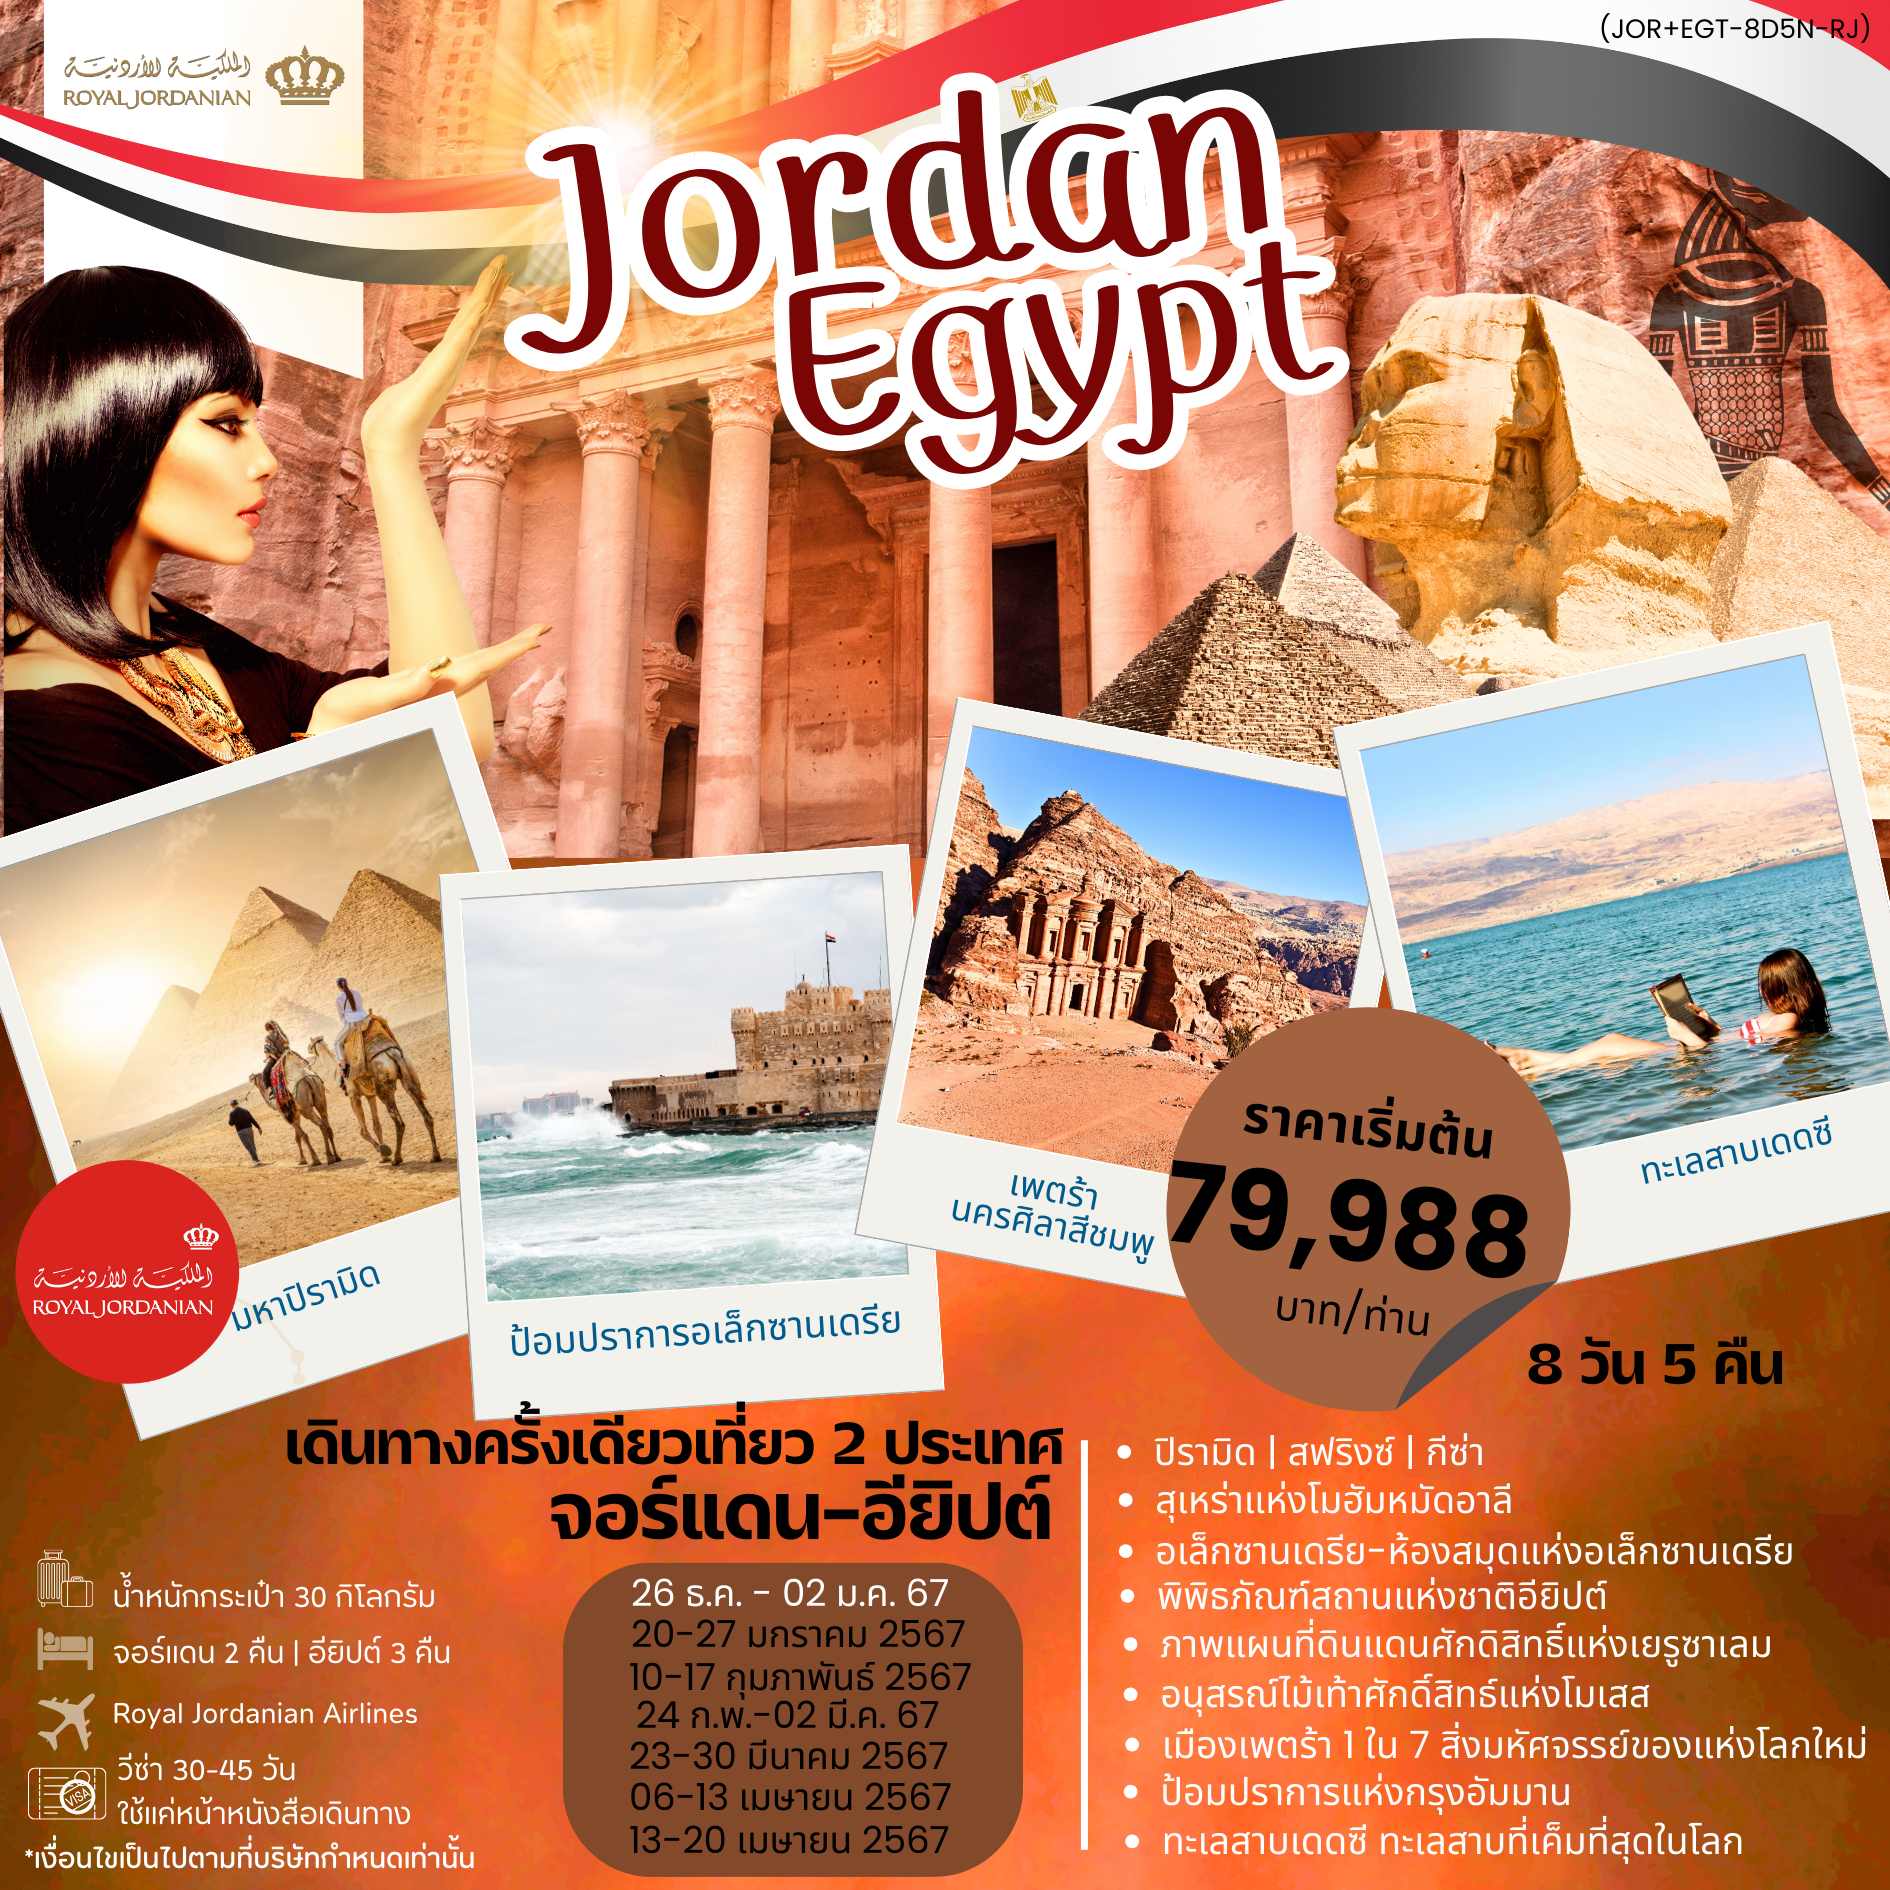 (JOR+EGT-8D5N-RJ )เที่ยวไฮไลท์ 2 ประเทศ จอร์แดน+อียิปต์ 8 วัน 5 คืน BY ROYAL JORNADIAN